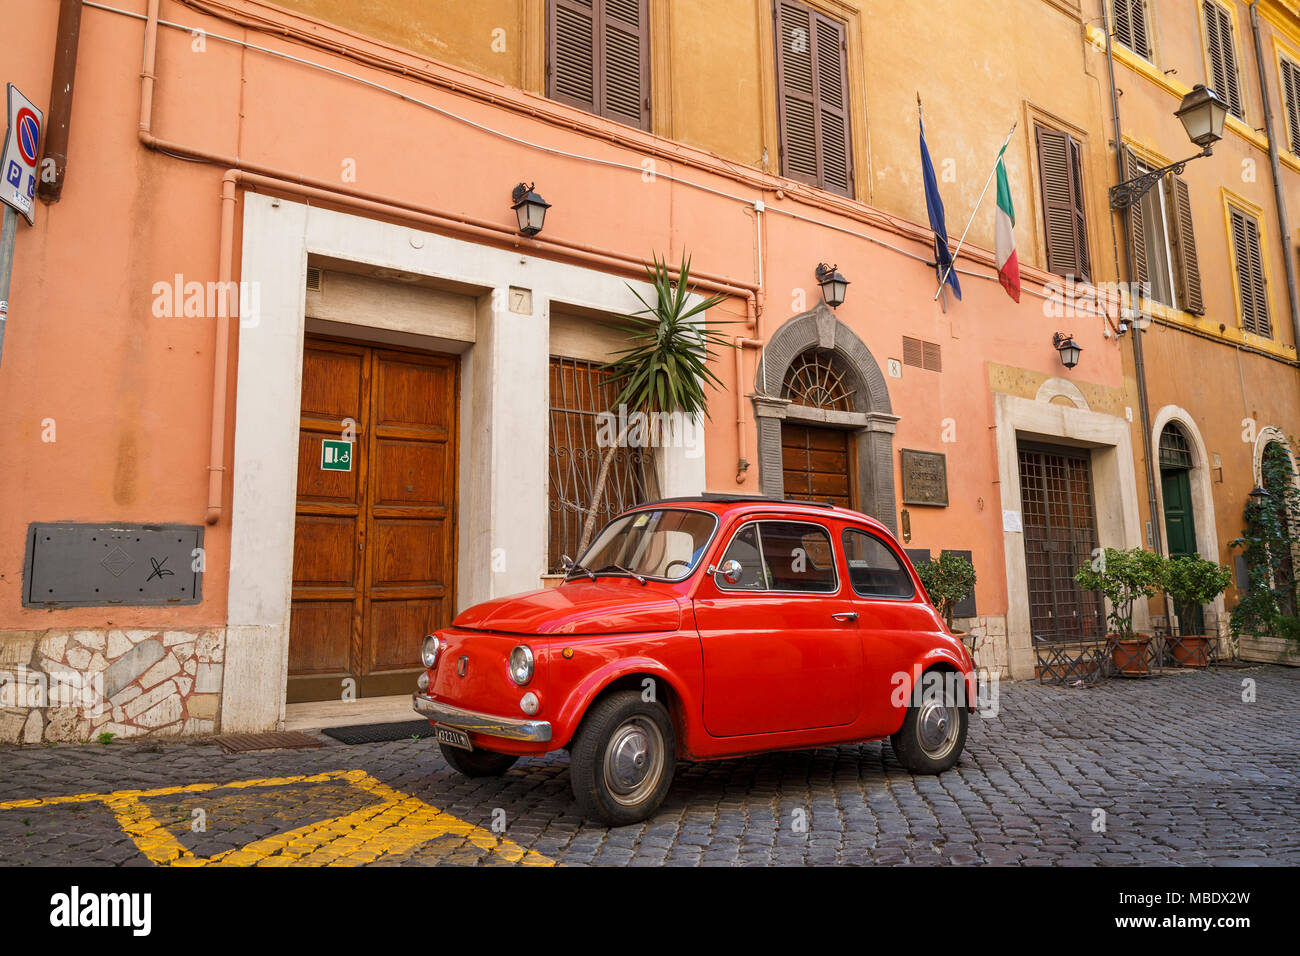 Iconic Ansicht einer alten roten Fiat 500 in einer gepflasterten Straße in Rom, Italien, geparkt, außerhalb eines Gebäudes unter italienischer Flagge. Die Nummernschilder zeigen ein MI Stockfoto